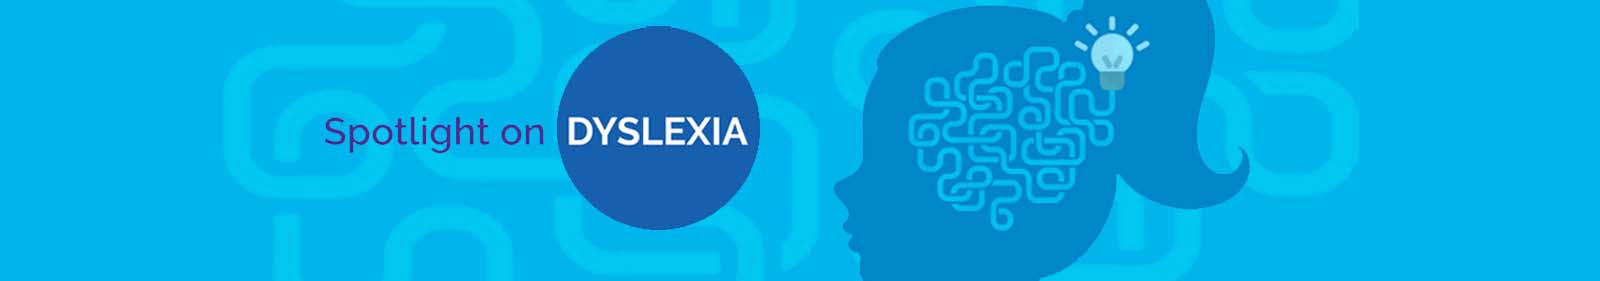 Spotlight on Dyslexia Virtual Conference